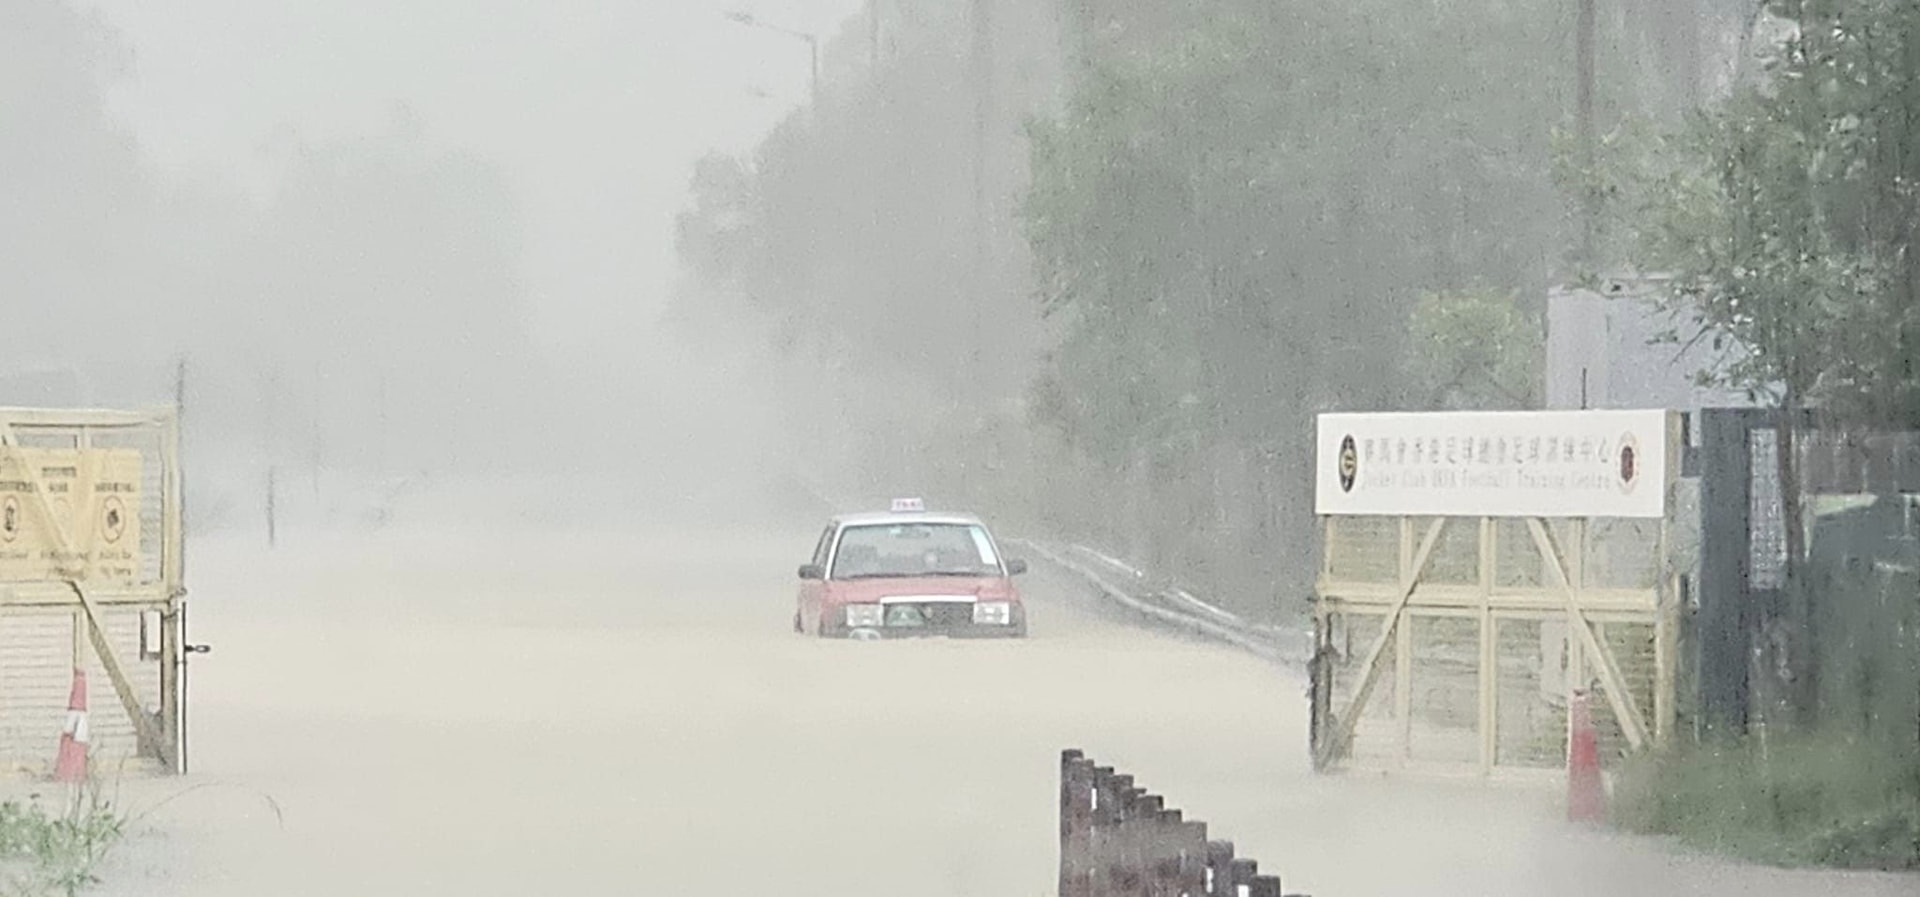 5月4日将军澳暴雨大水浸。赛马会香港足球总会足球训练中心对开水浸至淹过的士车胎。（将军澳主场/Jack Li相片）